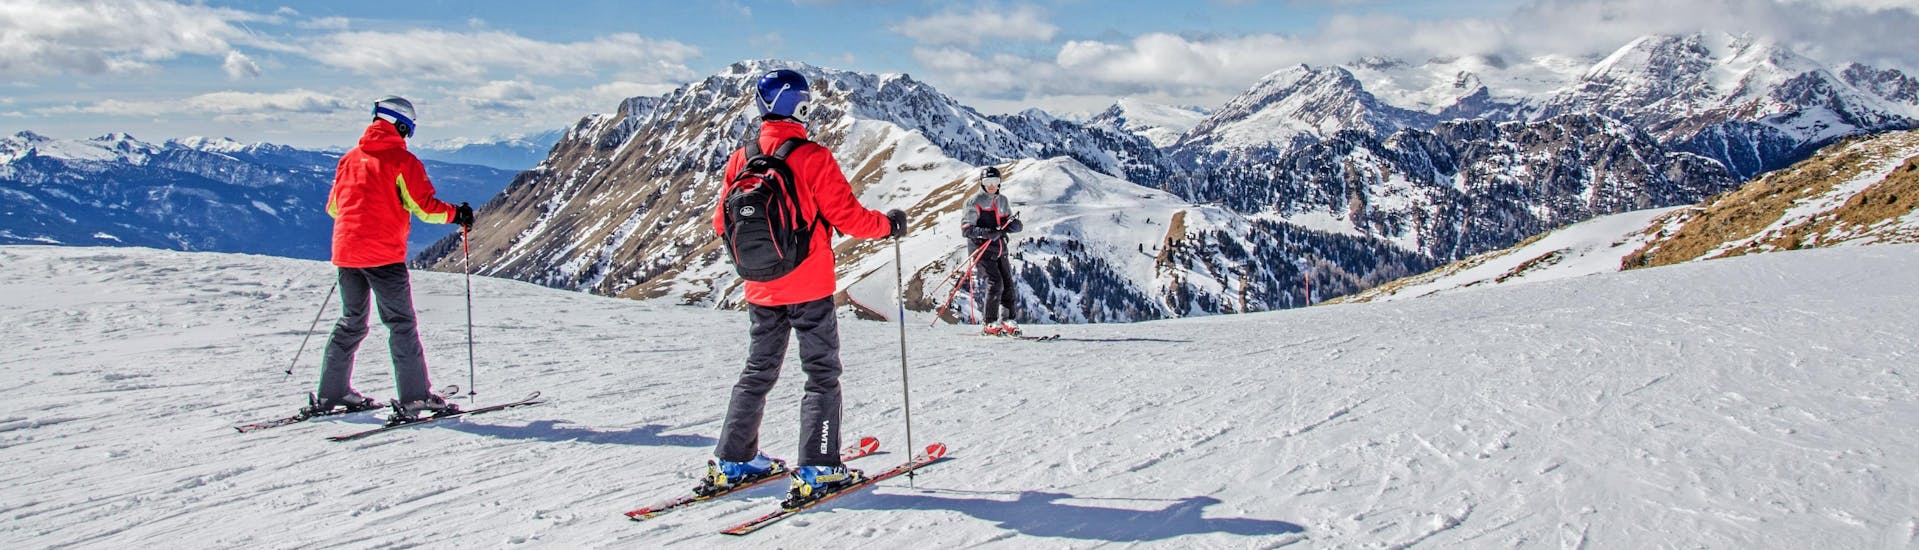 Gli sciatori si godono lo splendido panorama della Val di Fiemme, dove le scuole di sci locali offrono le loro lezioni di sci.